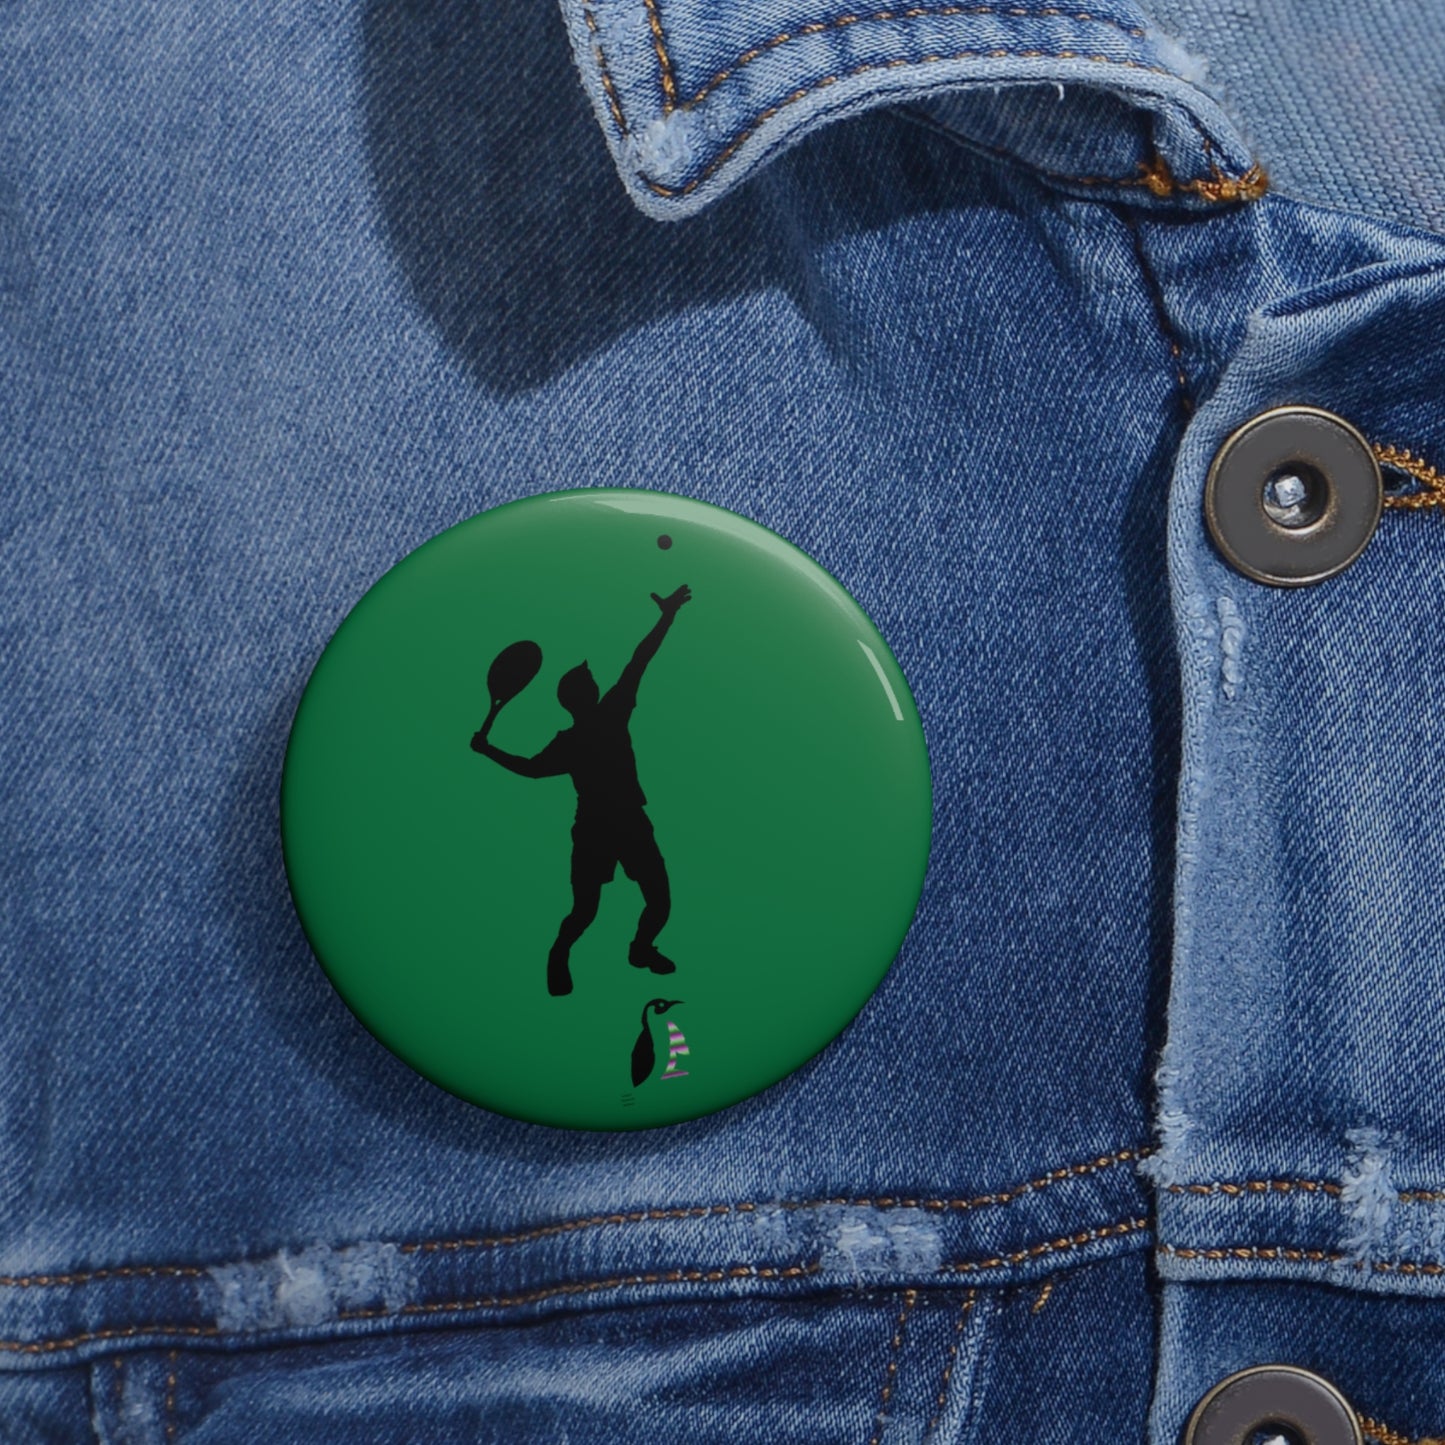 Custom Pin Buttons Tennis Dark Green